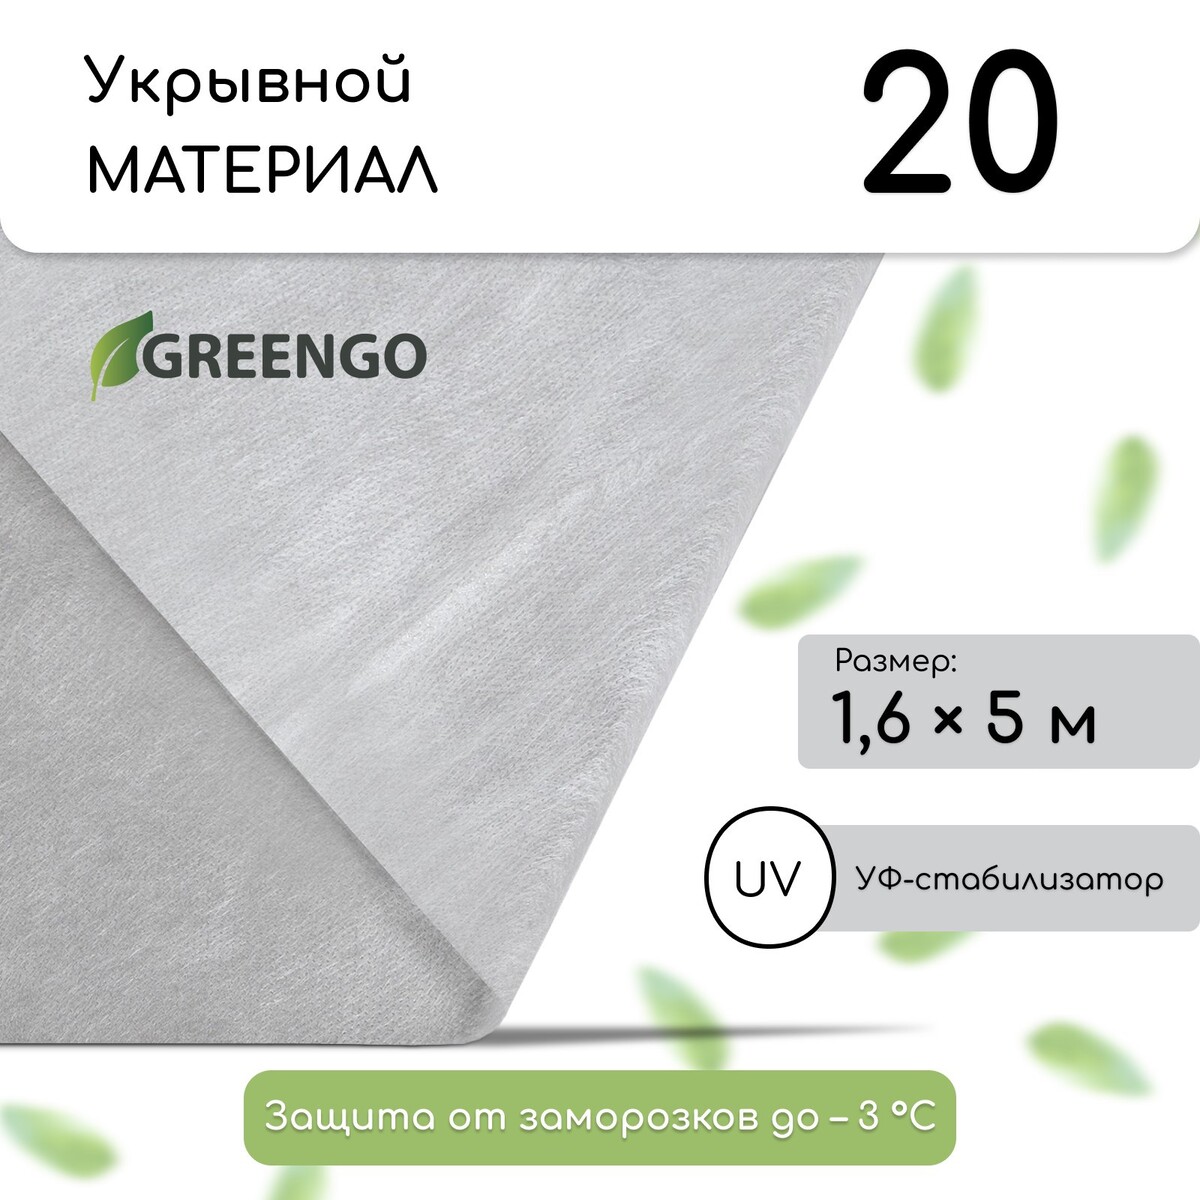 Материал укрывной, 5 × 1.6 м, плотность 20 г/м², спанбонд с уф-стабилизатором, белый, greengo, эконом 30%